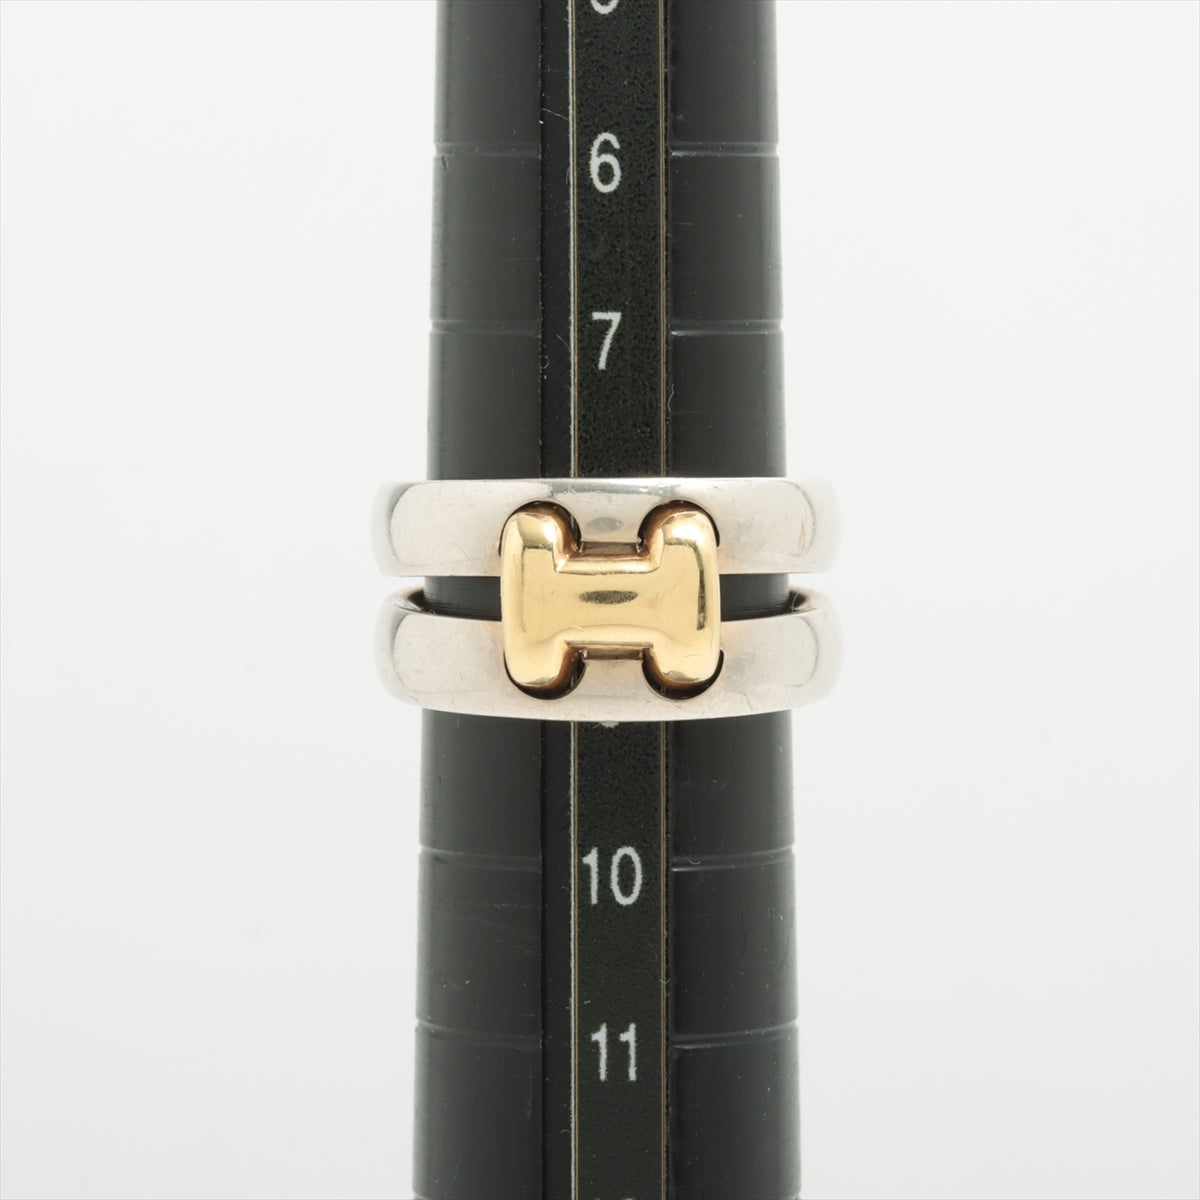 Hermès Olympe rings 50 925×750 8.8g Silver x gold